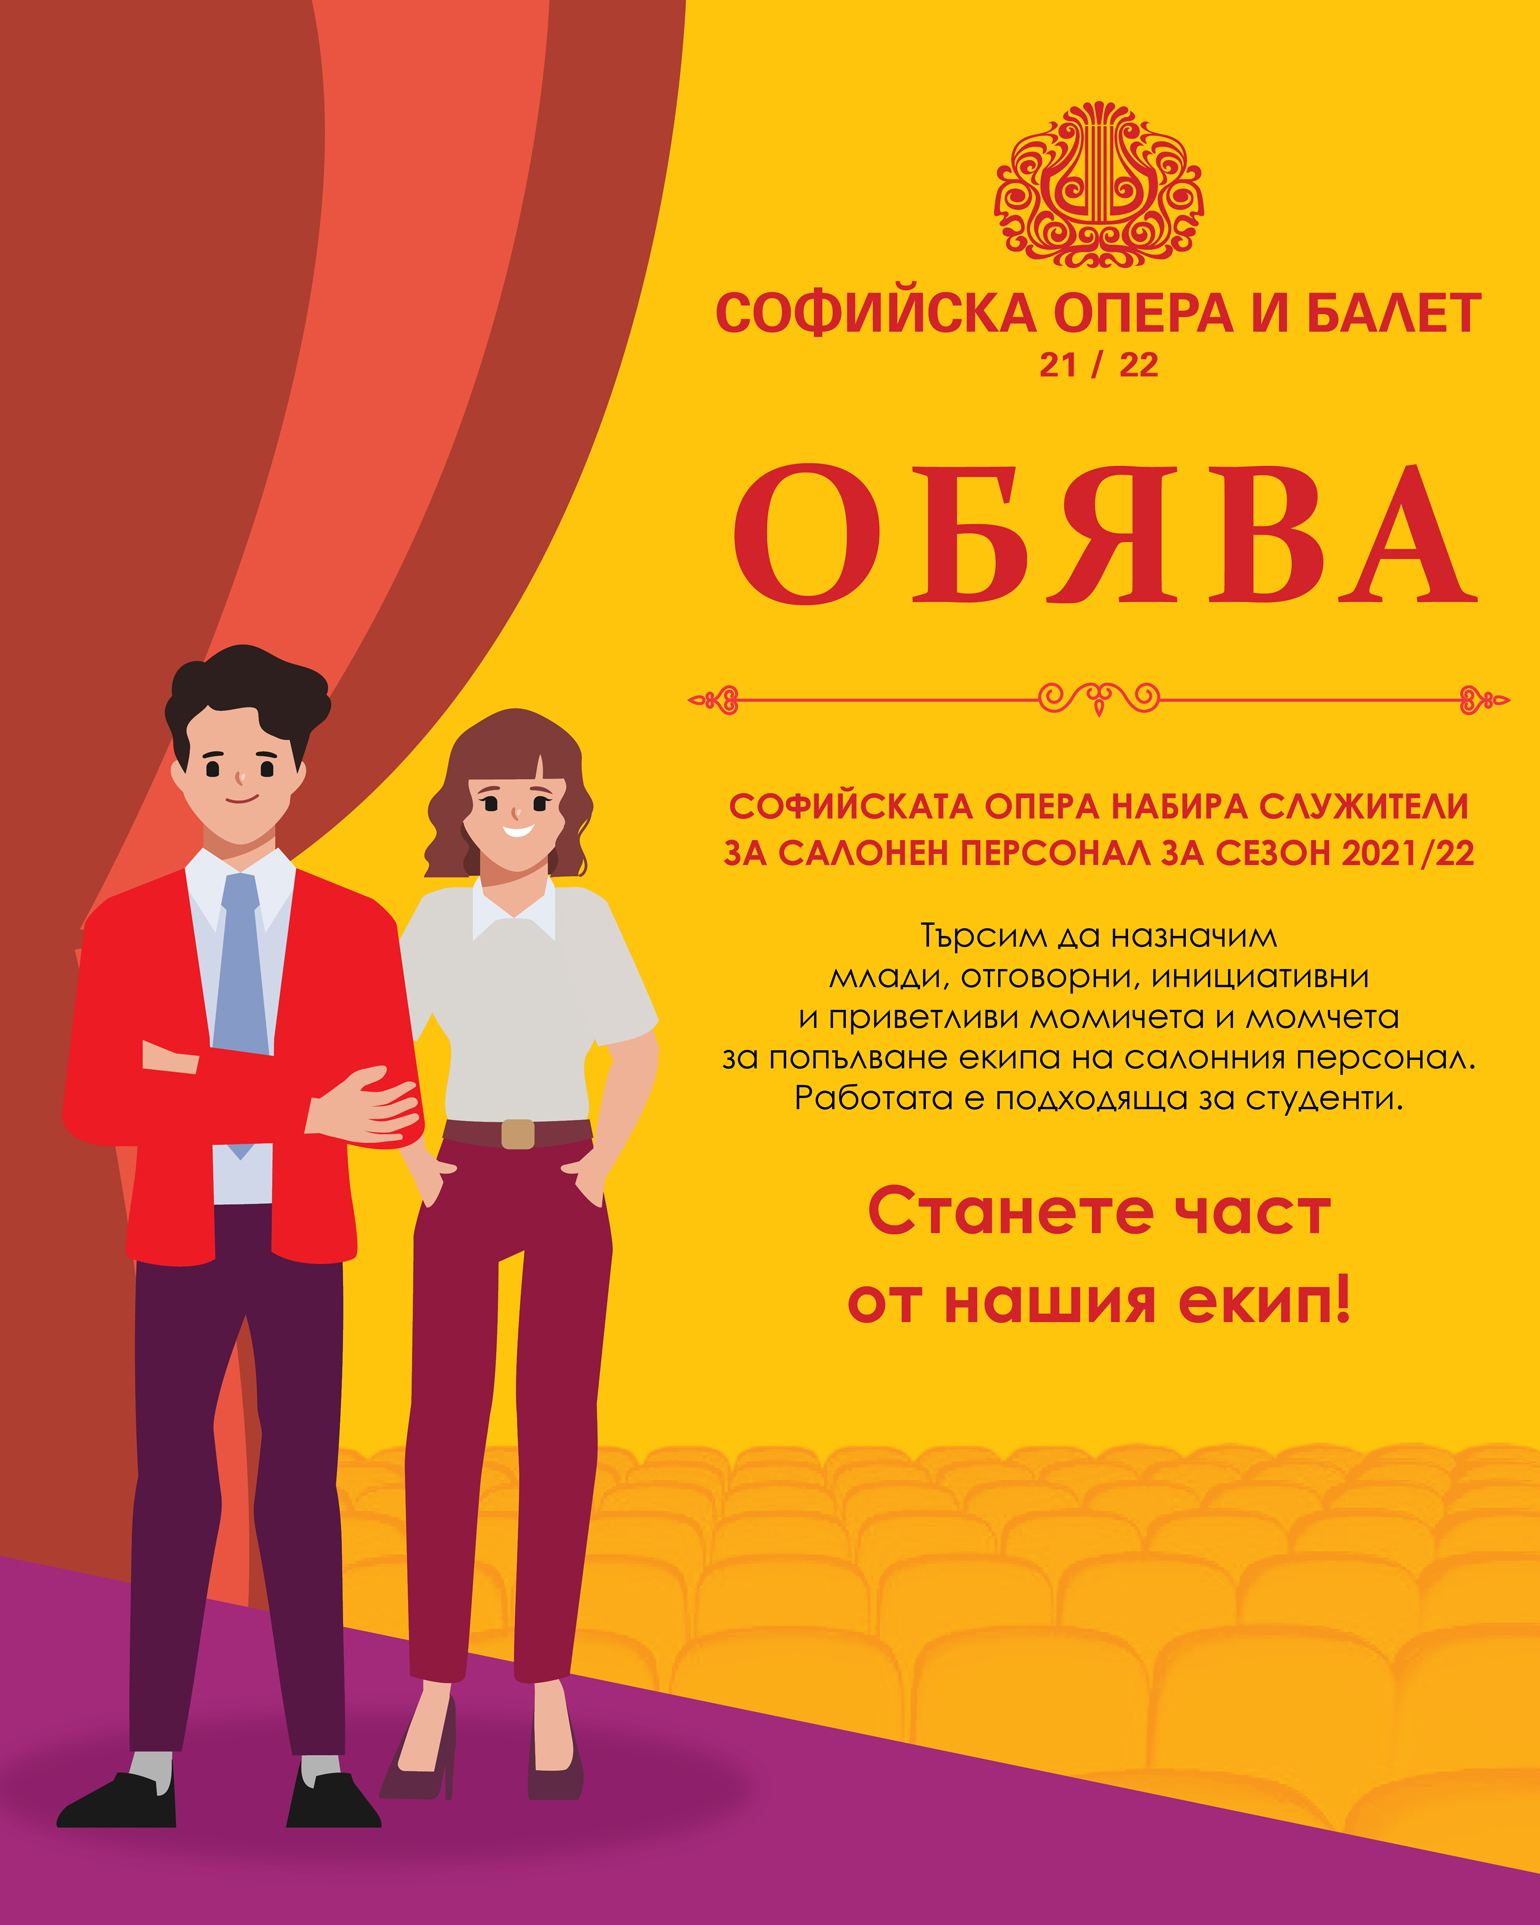 Софийска опера и балет обявява конкурс за салонен персонал